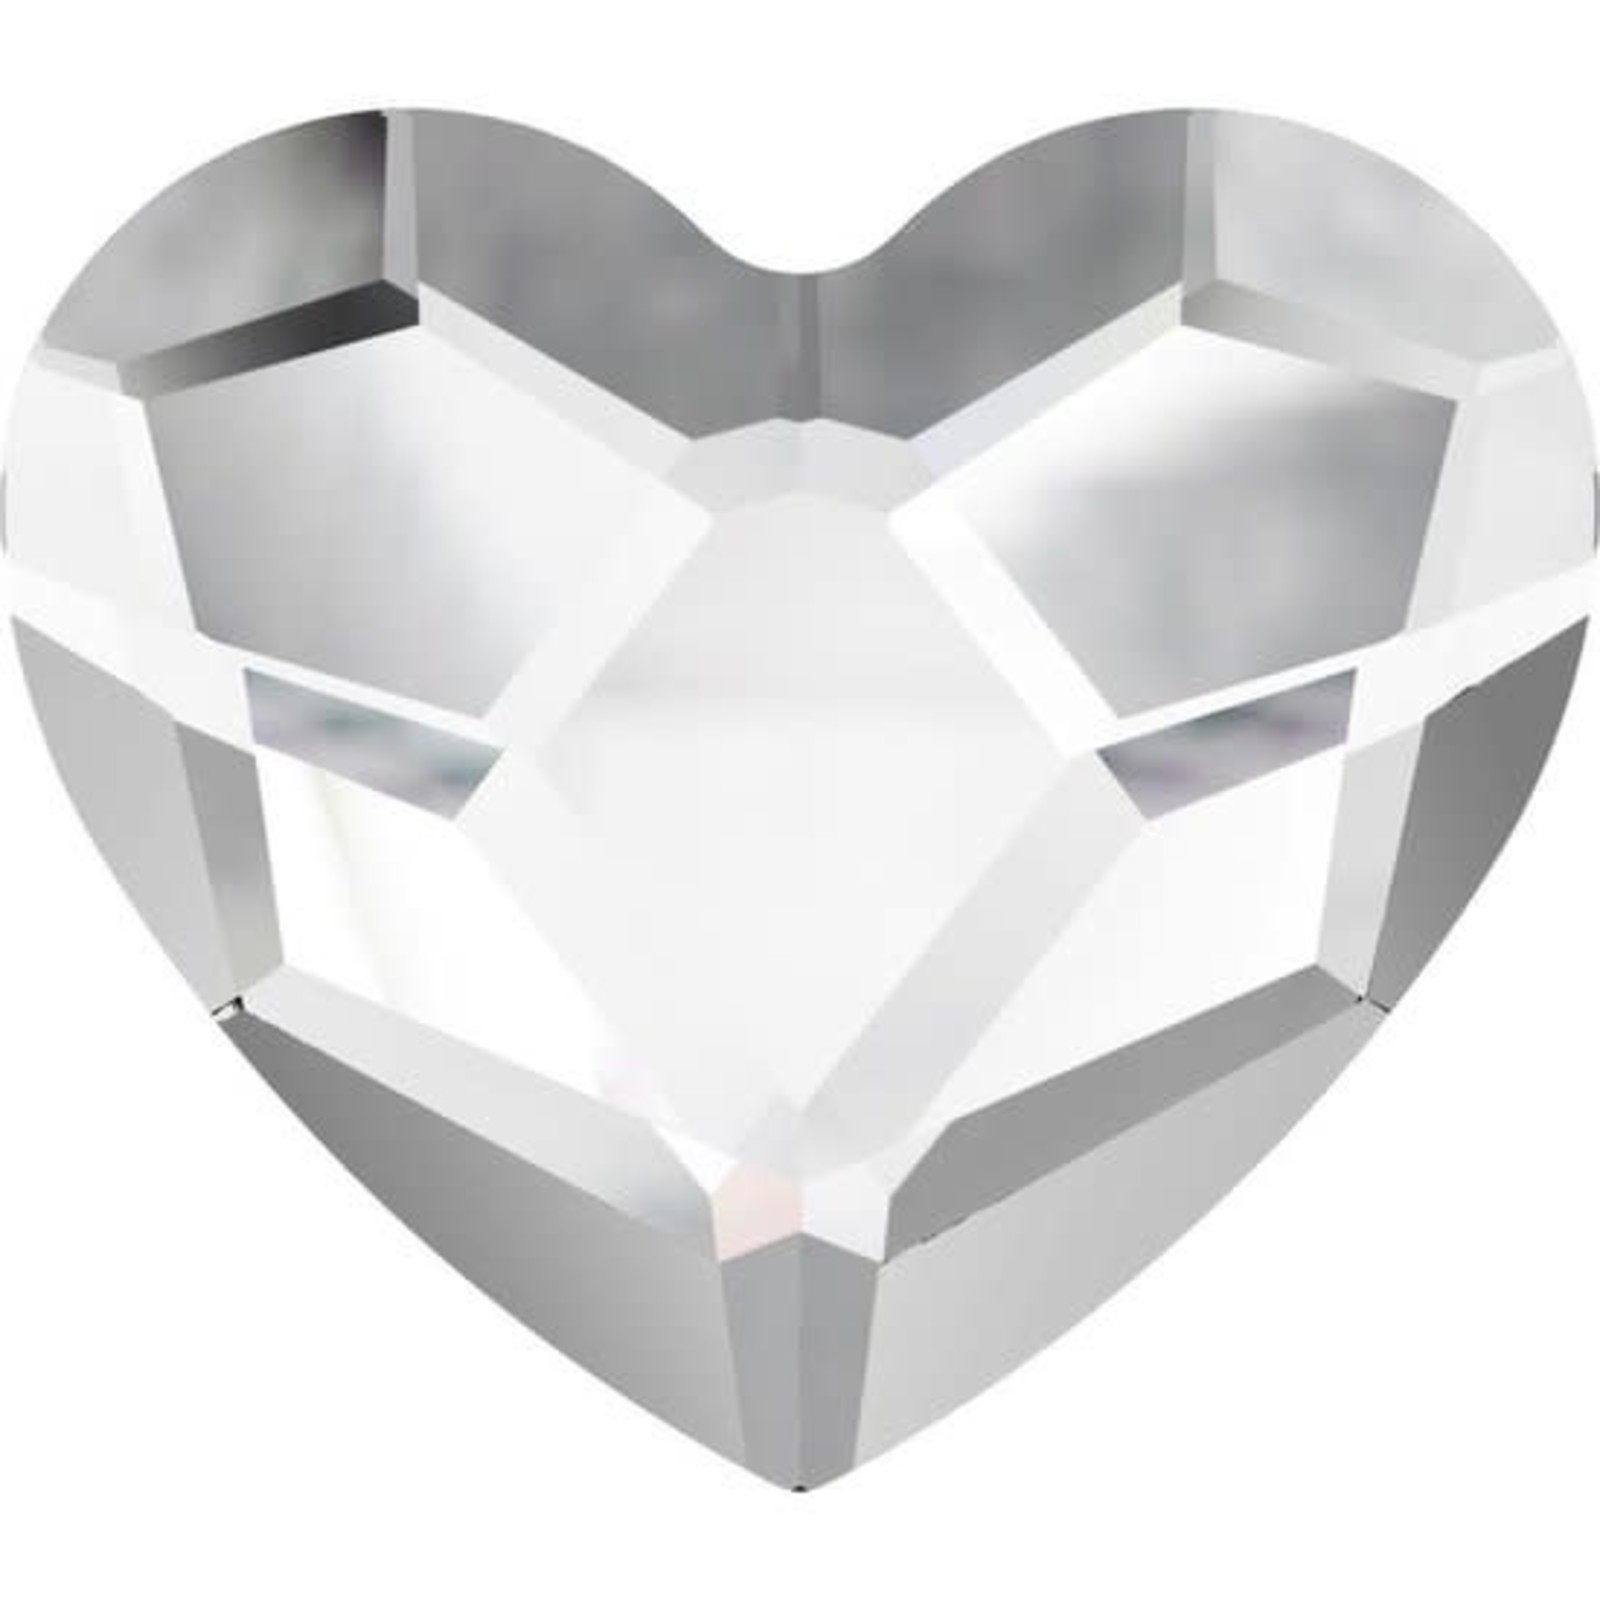 Swarovski Swarovski Heart Crystal 6mm